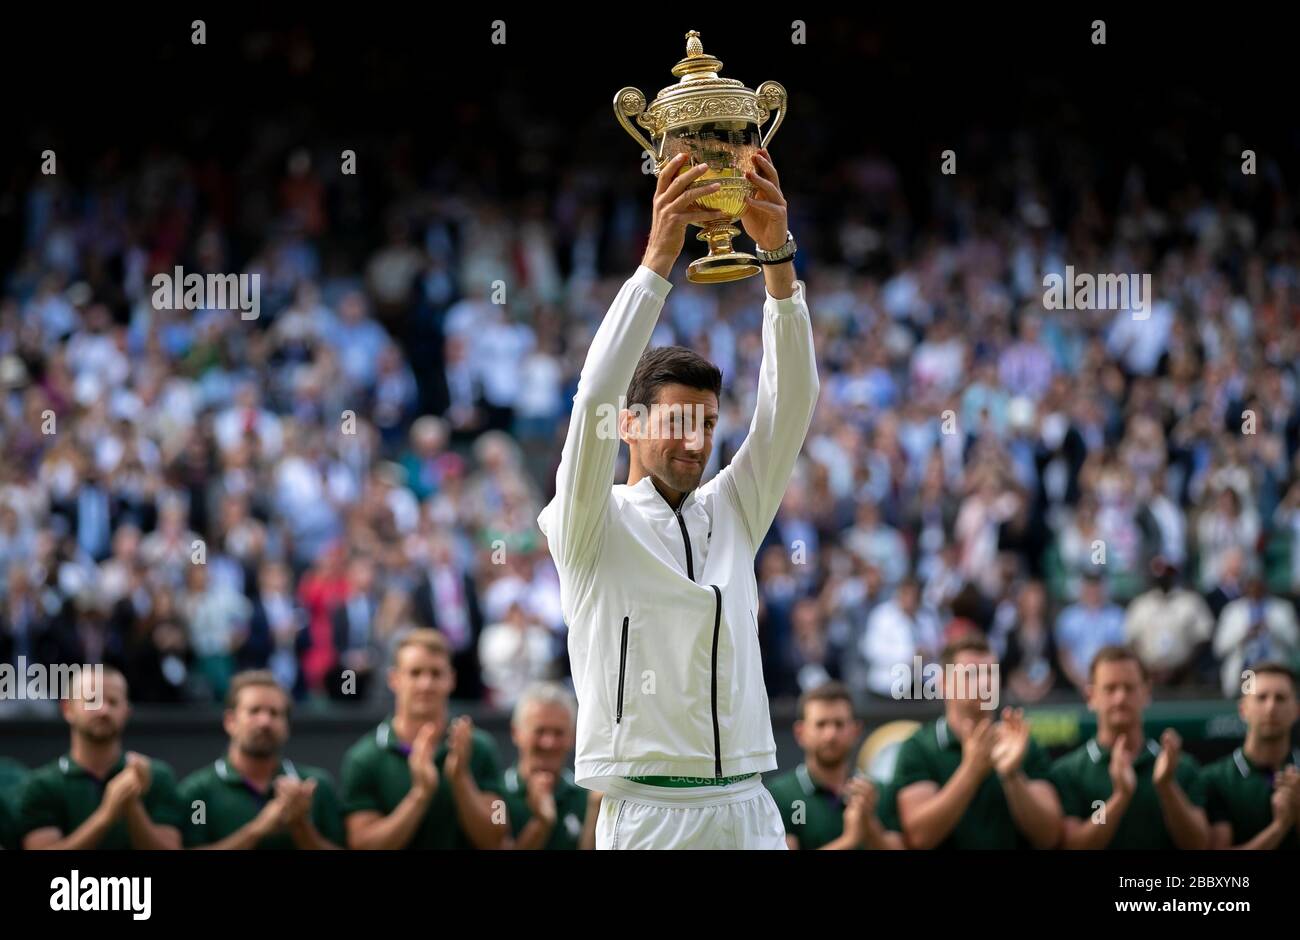 Londres, Reino Unido. 14 de julio de 2019. Foto tomada el 14 de julio de 2019 muestra a Novak Djokovic de Serbia posando con el trofeo después de ganar la final de singles masculinos contra Roger Federer de Suiza en el Campeonato de Tenis de Wimbledon 2019 en Londres, Gran Bretaña. El Wimbledon de este año ha sido cancelado debido a las preocupaciones de salud pública relacionadas con la actual pandemia de COVID-19, anunció el All England Club (AELTC) después de una reunión de emergencia el miércoles. Crédito: Han Yan/Xinhua/Alamy Live News Foto de stock